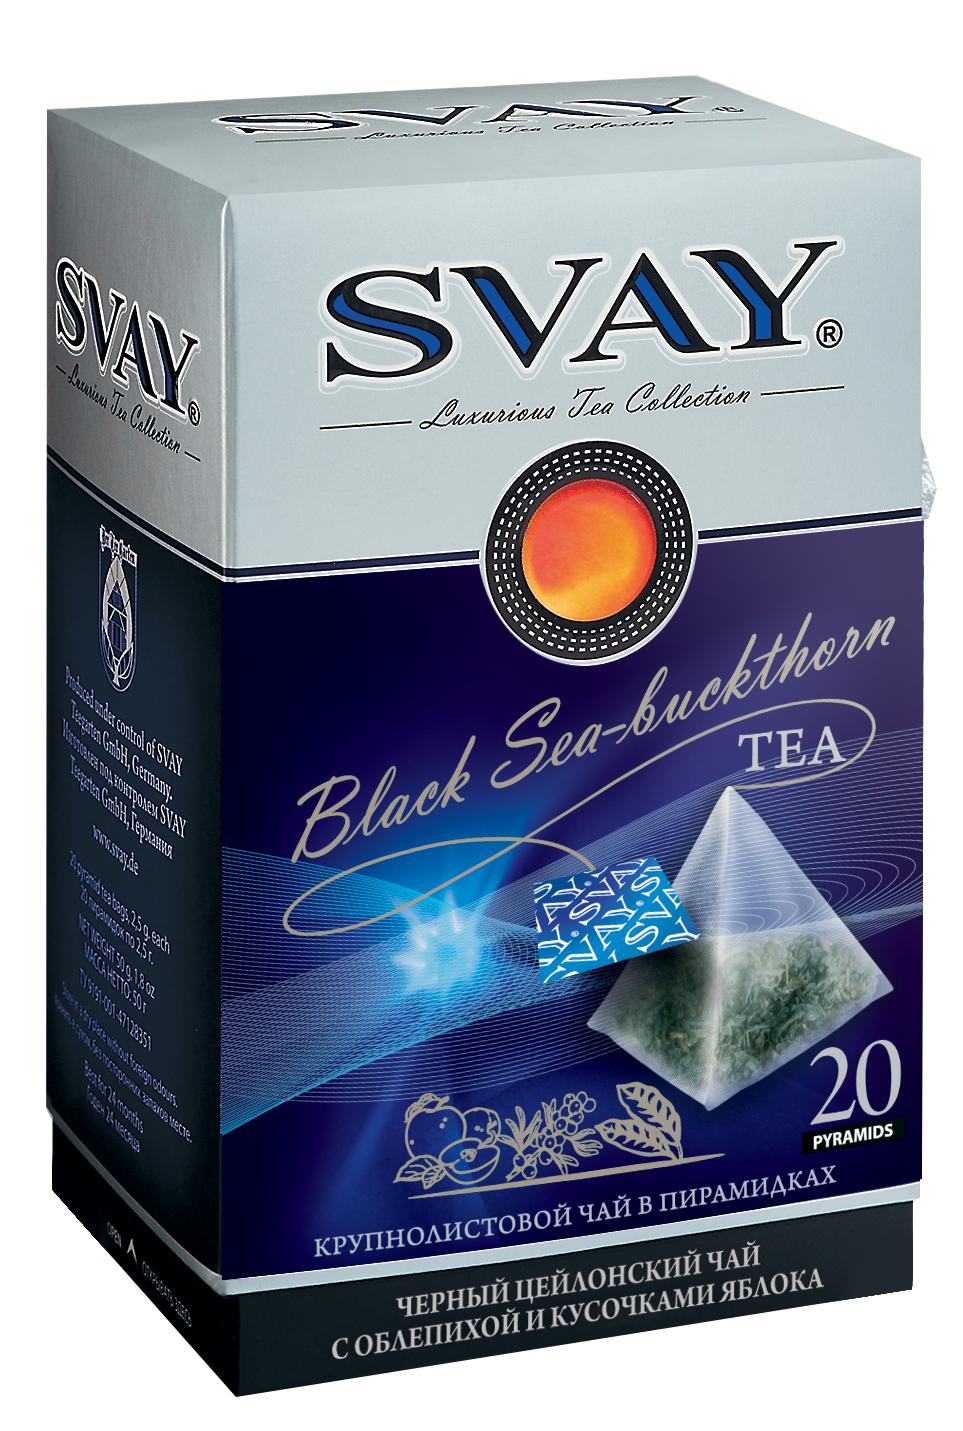 Чай Svay Black Sea-buckthorn черный c облепихой в пирамидках, 50 гр., картон